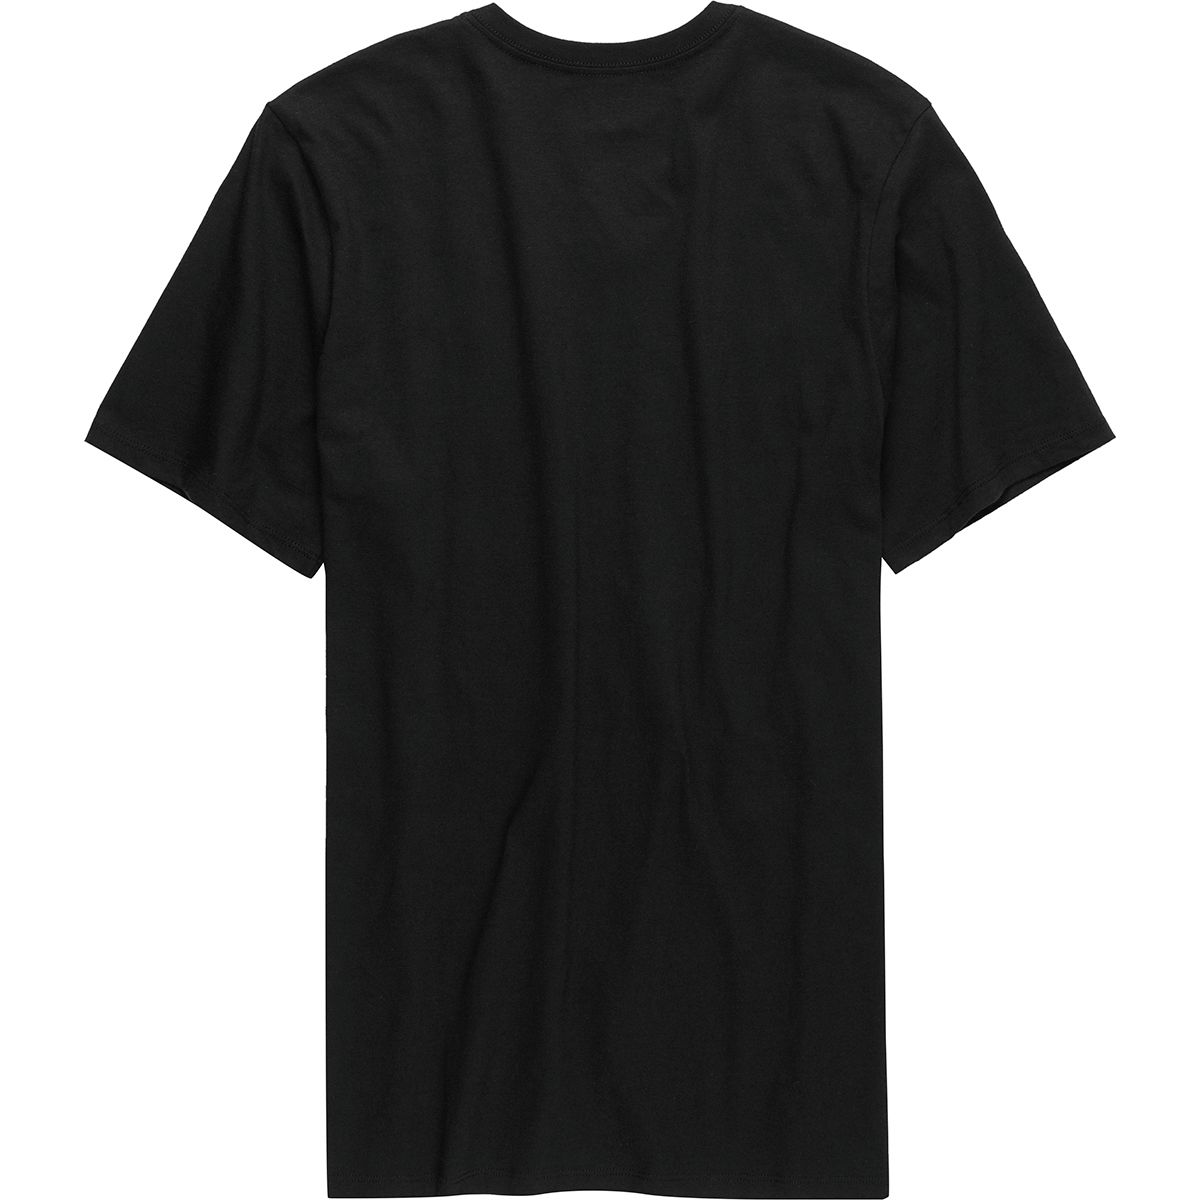 Hurley Staple V-Neck T-Shirt - Men's Black XL | eBay